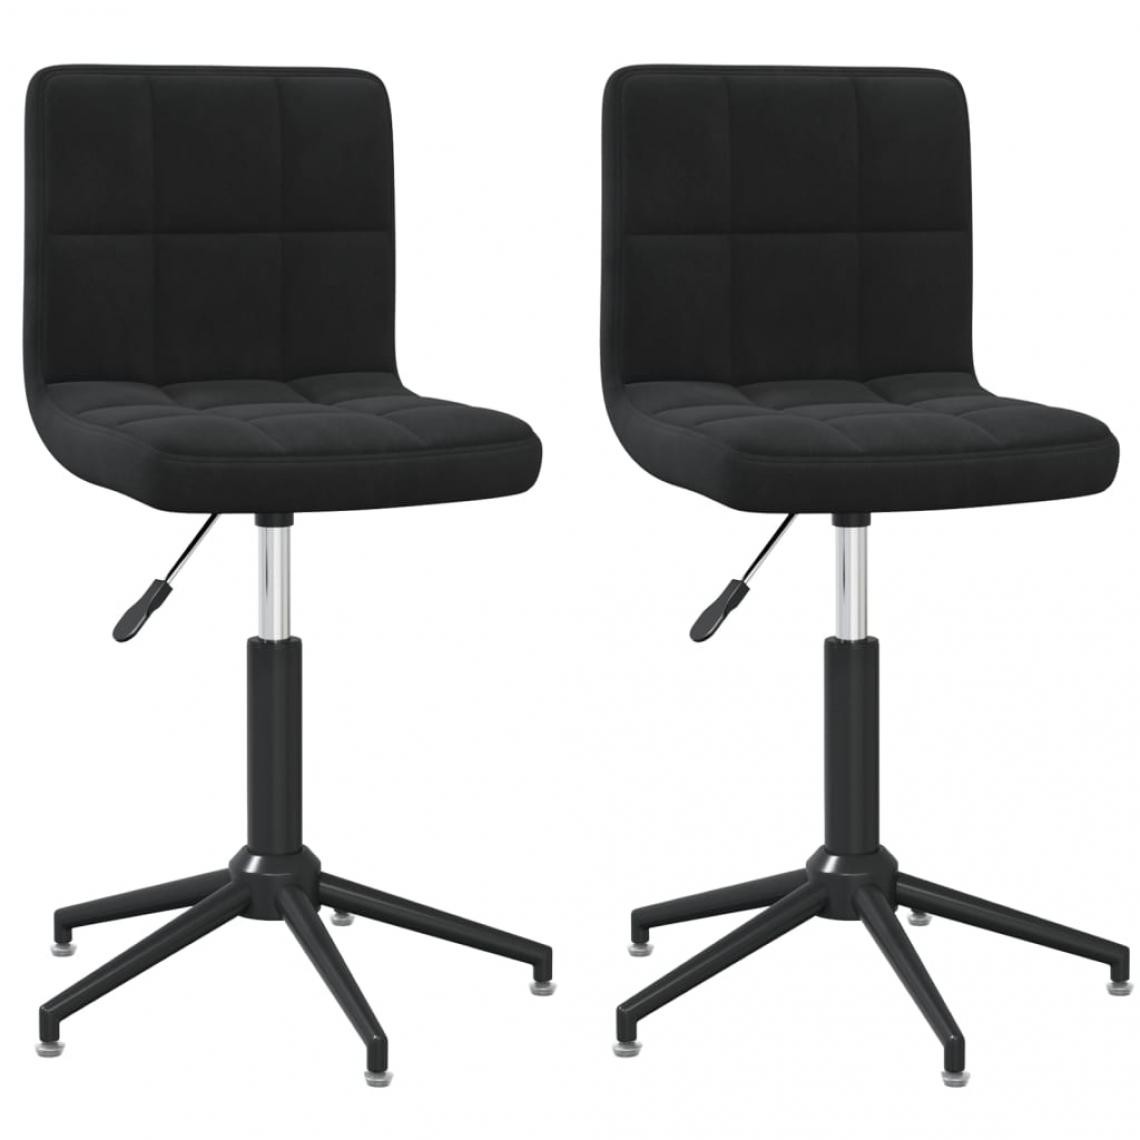 Decoshop26 - Lot de 2 chaises de salle à manger cuisine design moderne velours noir CDS020885 - Chaises